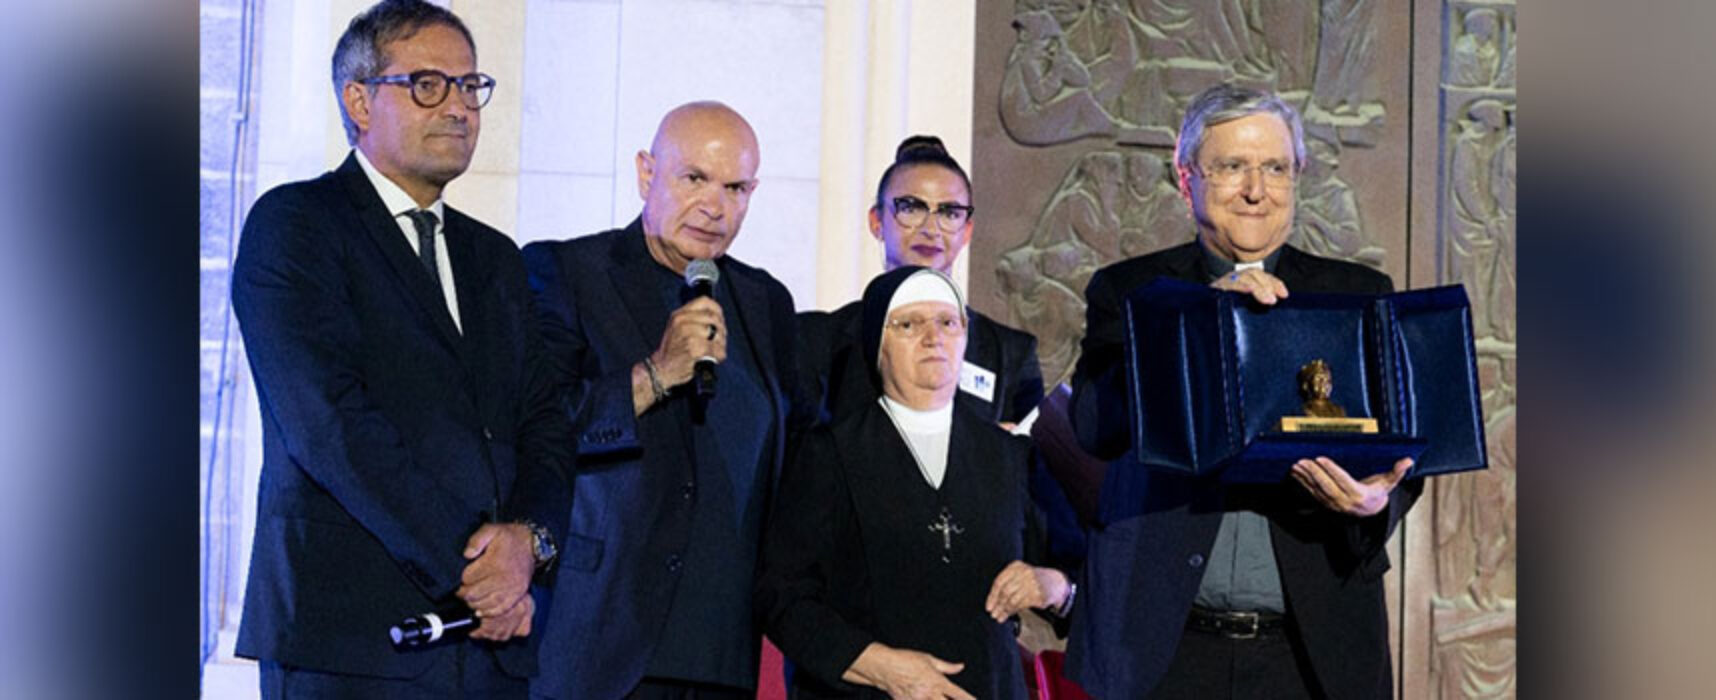 Il Premio Don Uva a Mons. Francesco Savino nel ricordo del venerabile prete biscegliese